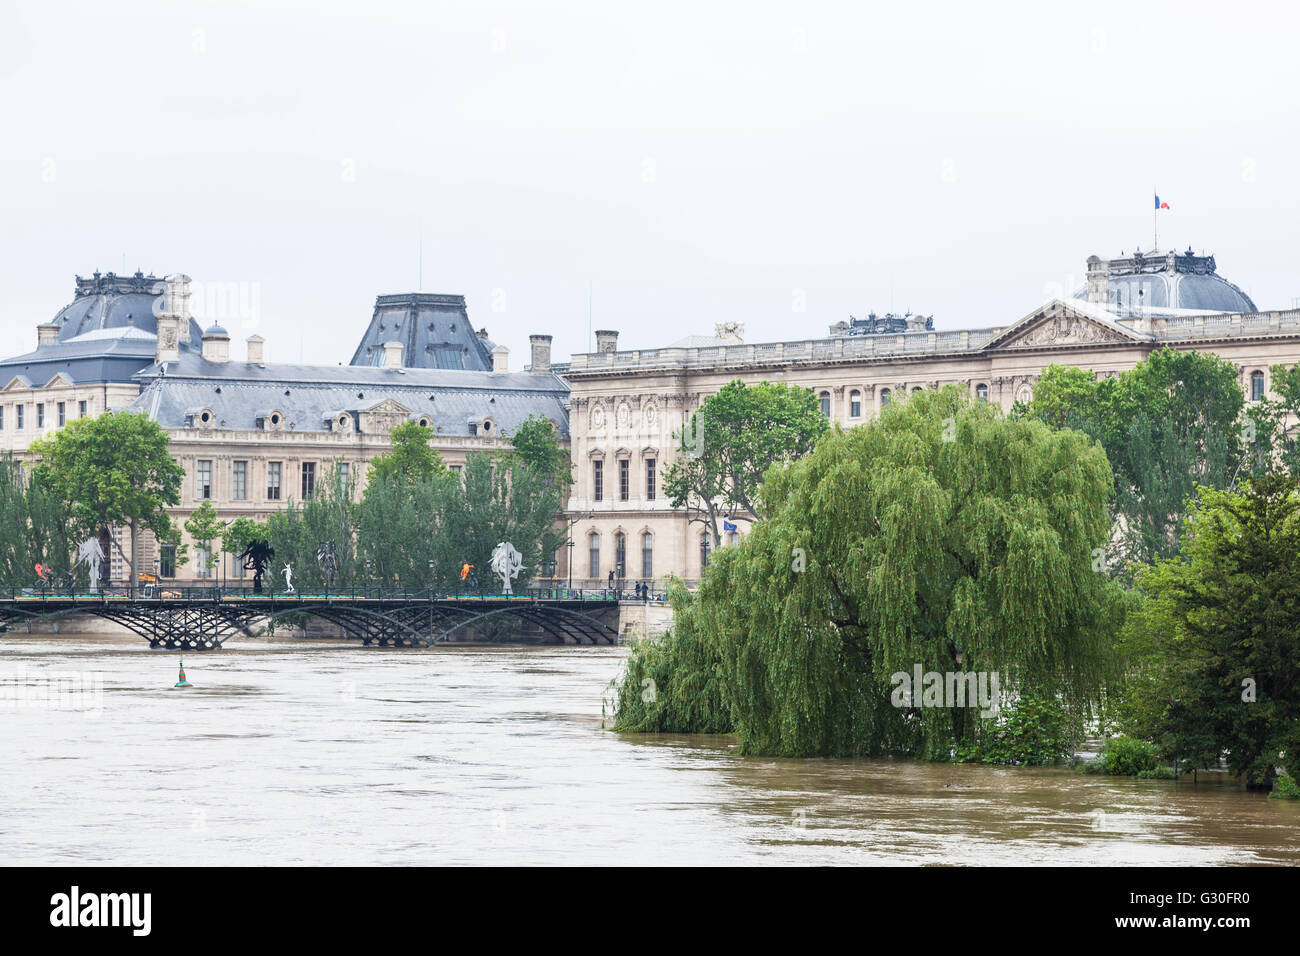 Inondation, Louvre, pont des arts, square du vert galant, Paris, 2016 Banque D'Images